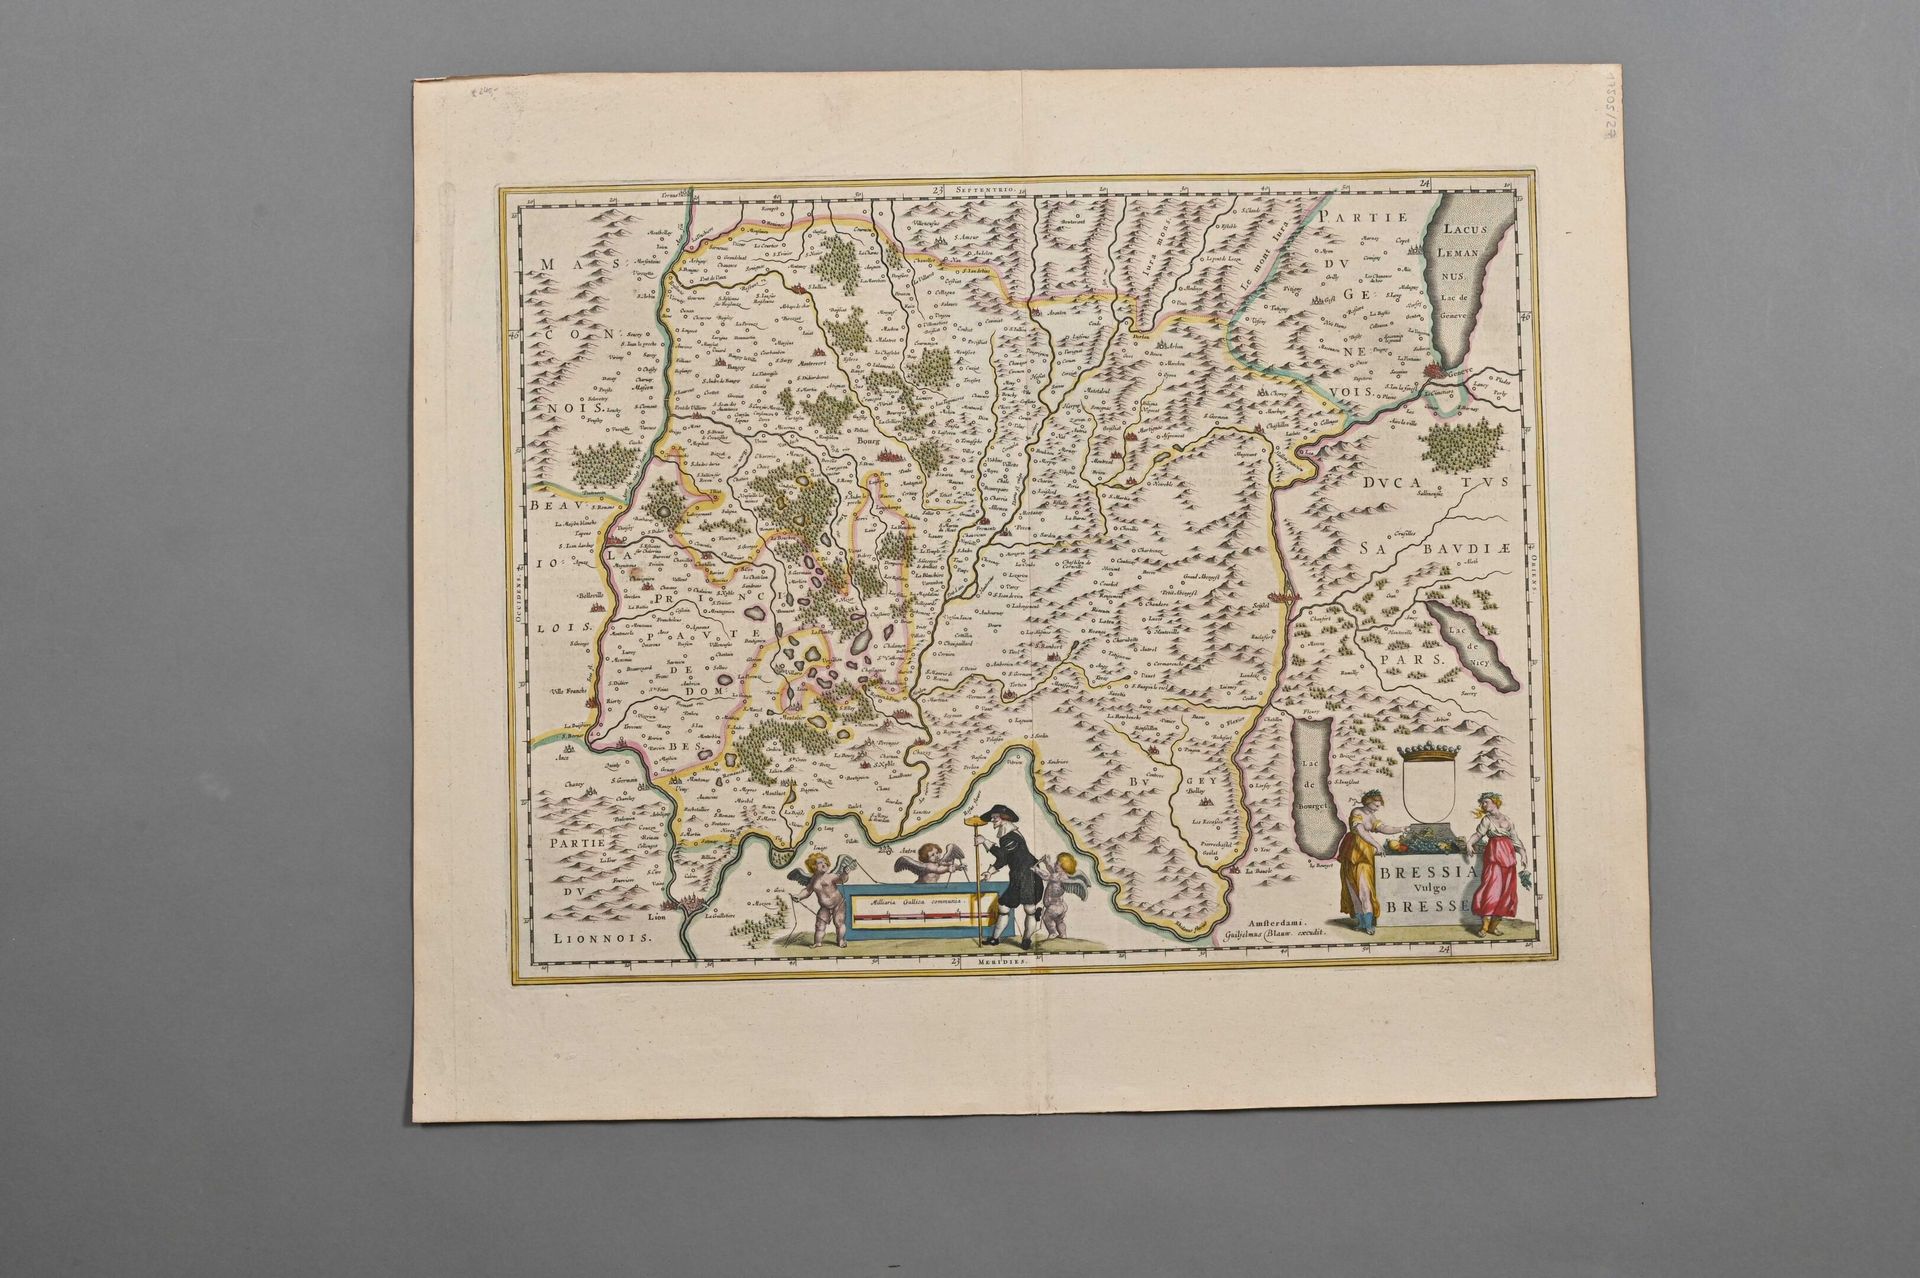 Null Bresse - Mapa de Blaeur siglo XVII

prueba en papel verjurado de una edició&hellip;